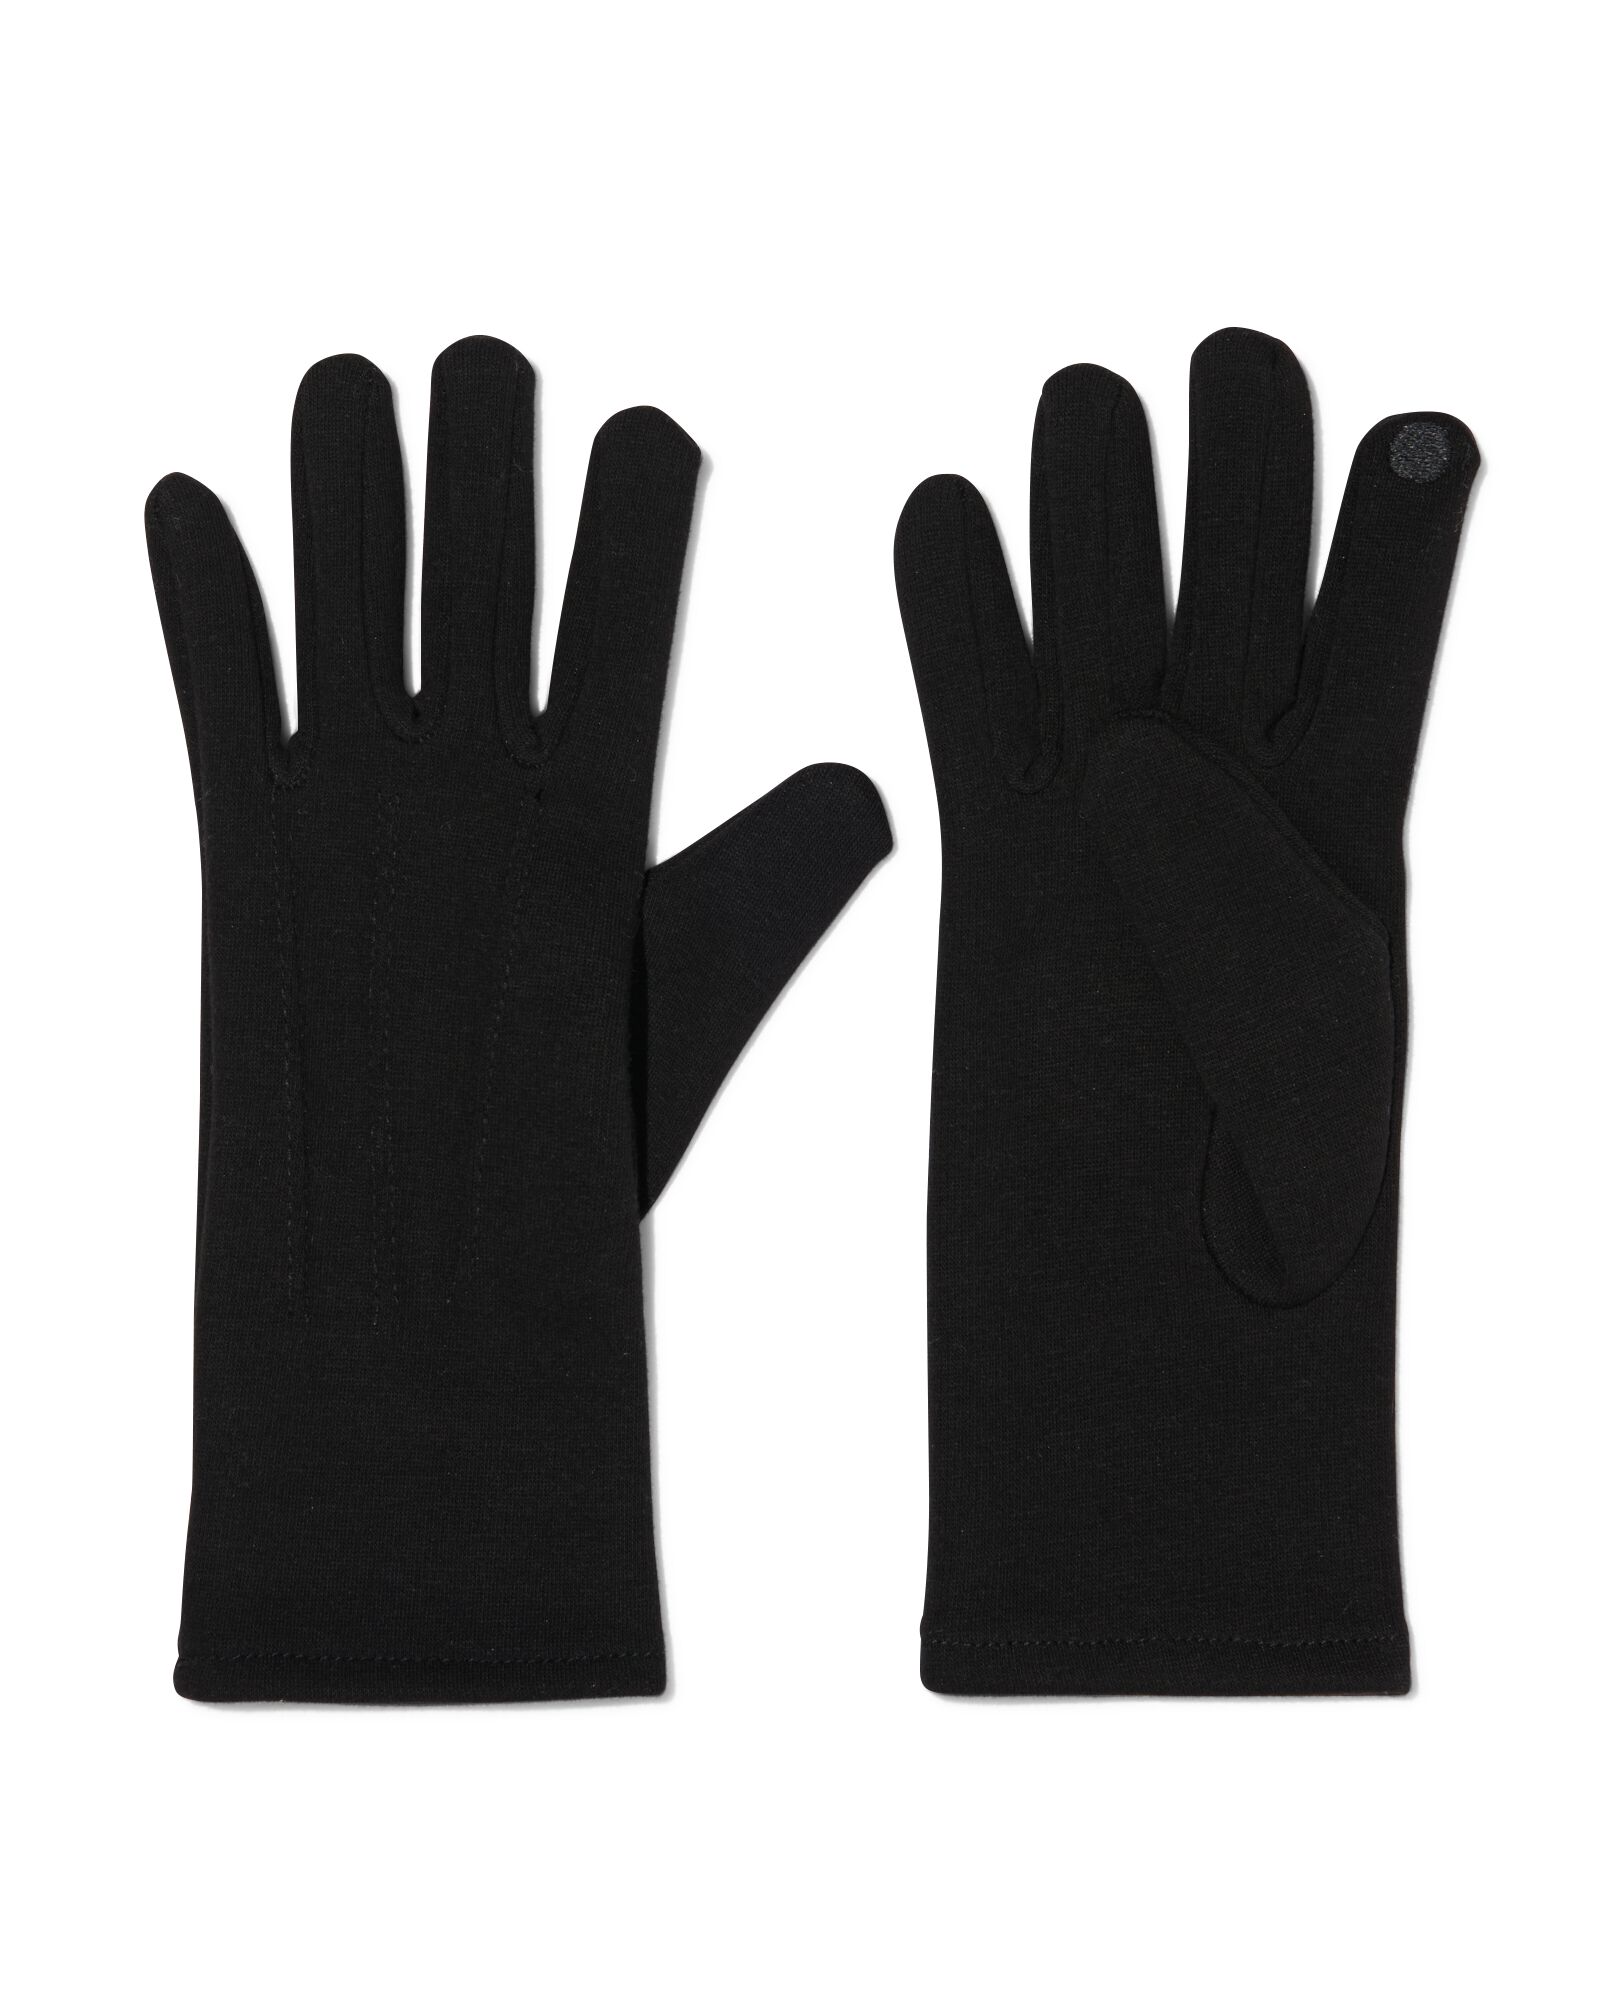 handschoenen touchscreen zwart L/XL - 16460177 - HEMA